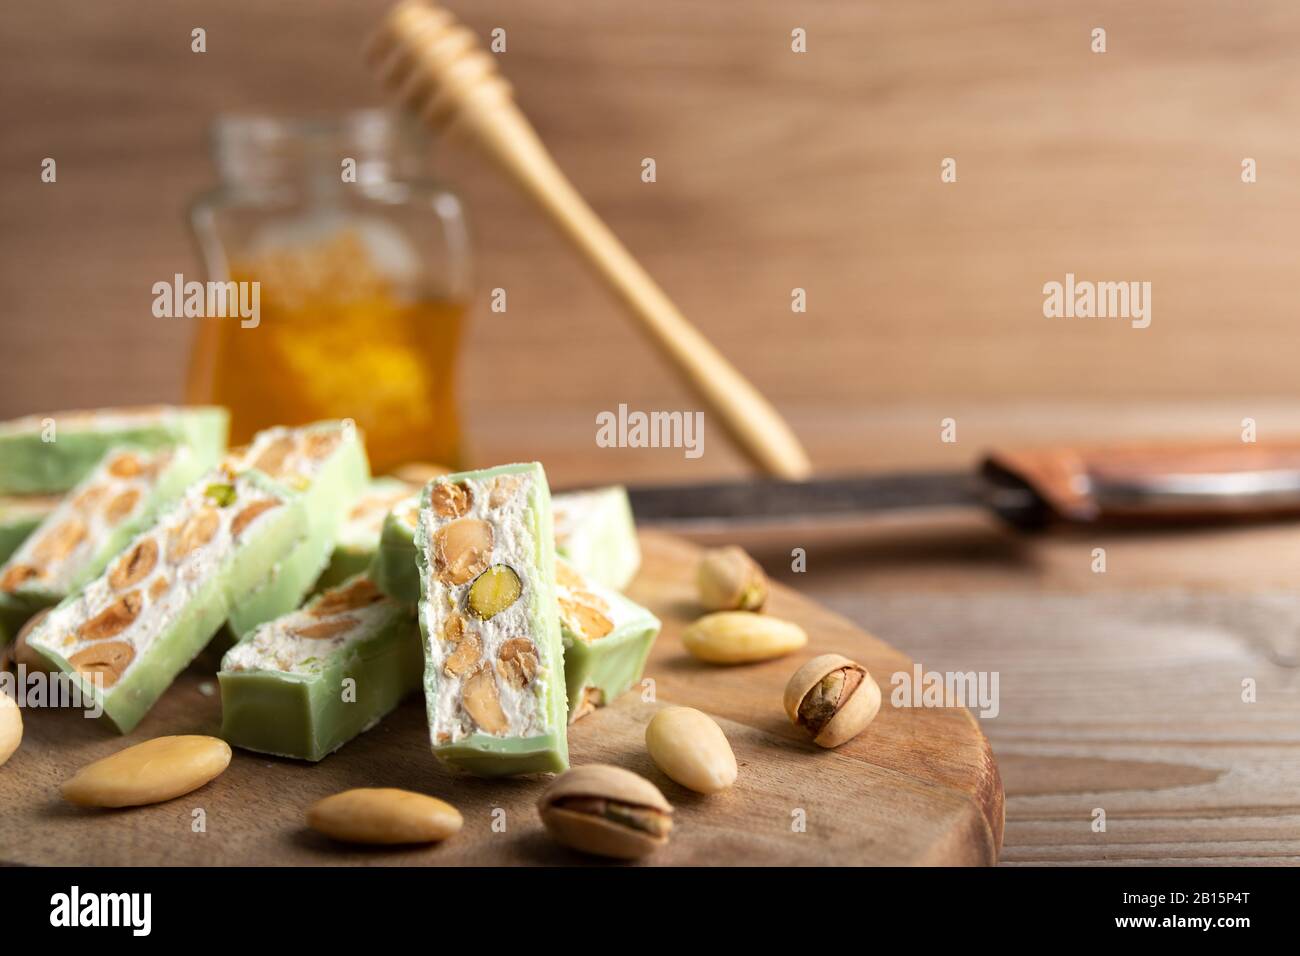 Nougat bio faites avec du miel, pistache, noisette, amande et noix sur une table en bois en arrière-plan. Banque D'Images